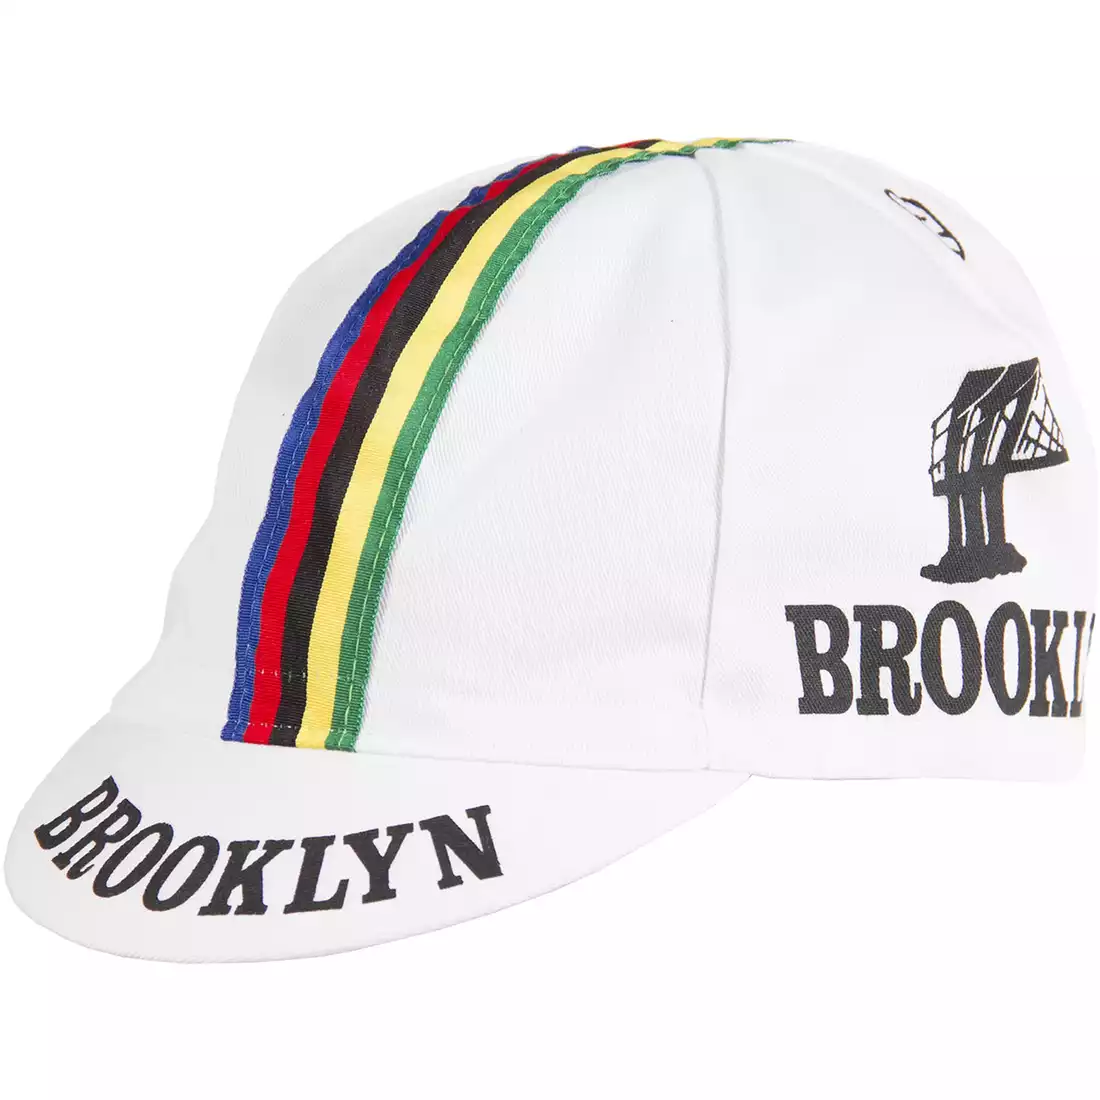 GIORDANA SS18 czapeczka kolarska - Brooklyn -  White w/ Stripe tape  GI-S6-COCA-BROK-WHIT one size